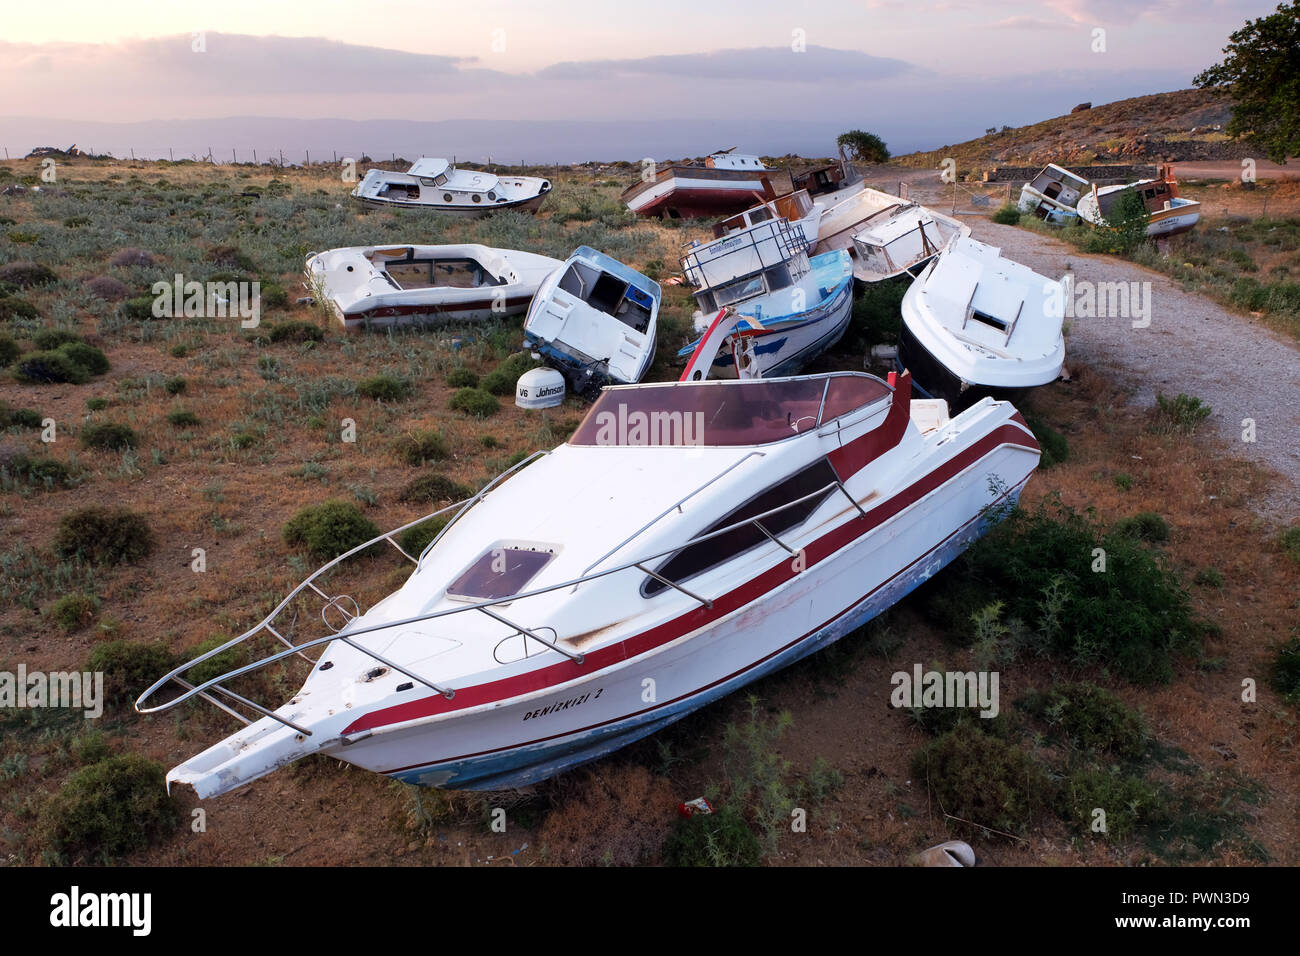 Beschädigte Boote von Flüchtlingen aus der Türkei über das Mittelmeer liegen geflohen sind, auf einem garbarge Deponie in der Nähe von Molivos, Lesbos, Griechenland, im Mai 2018 - Fluchtboote in einer Mülldeponie bei Molivos, Insel Lesbos, Griechenland, Mai 2018 Stockfoto